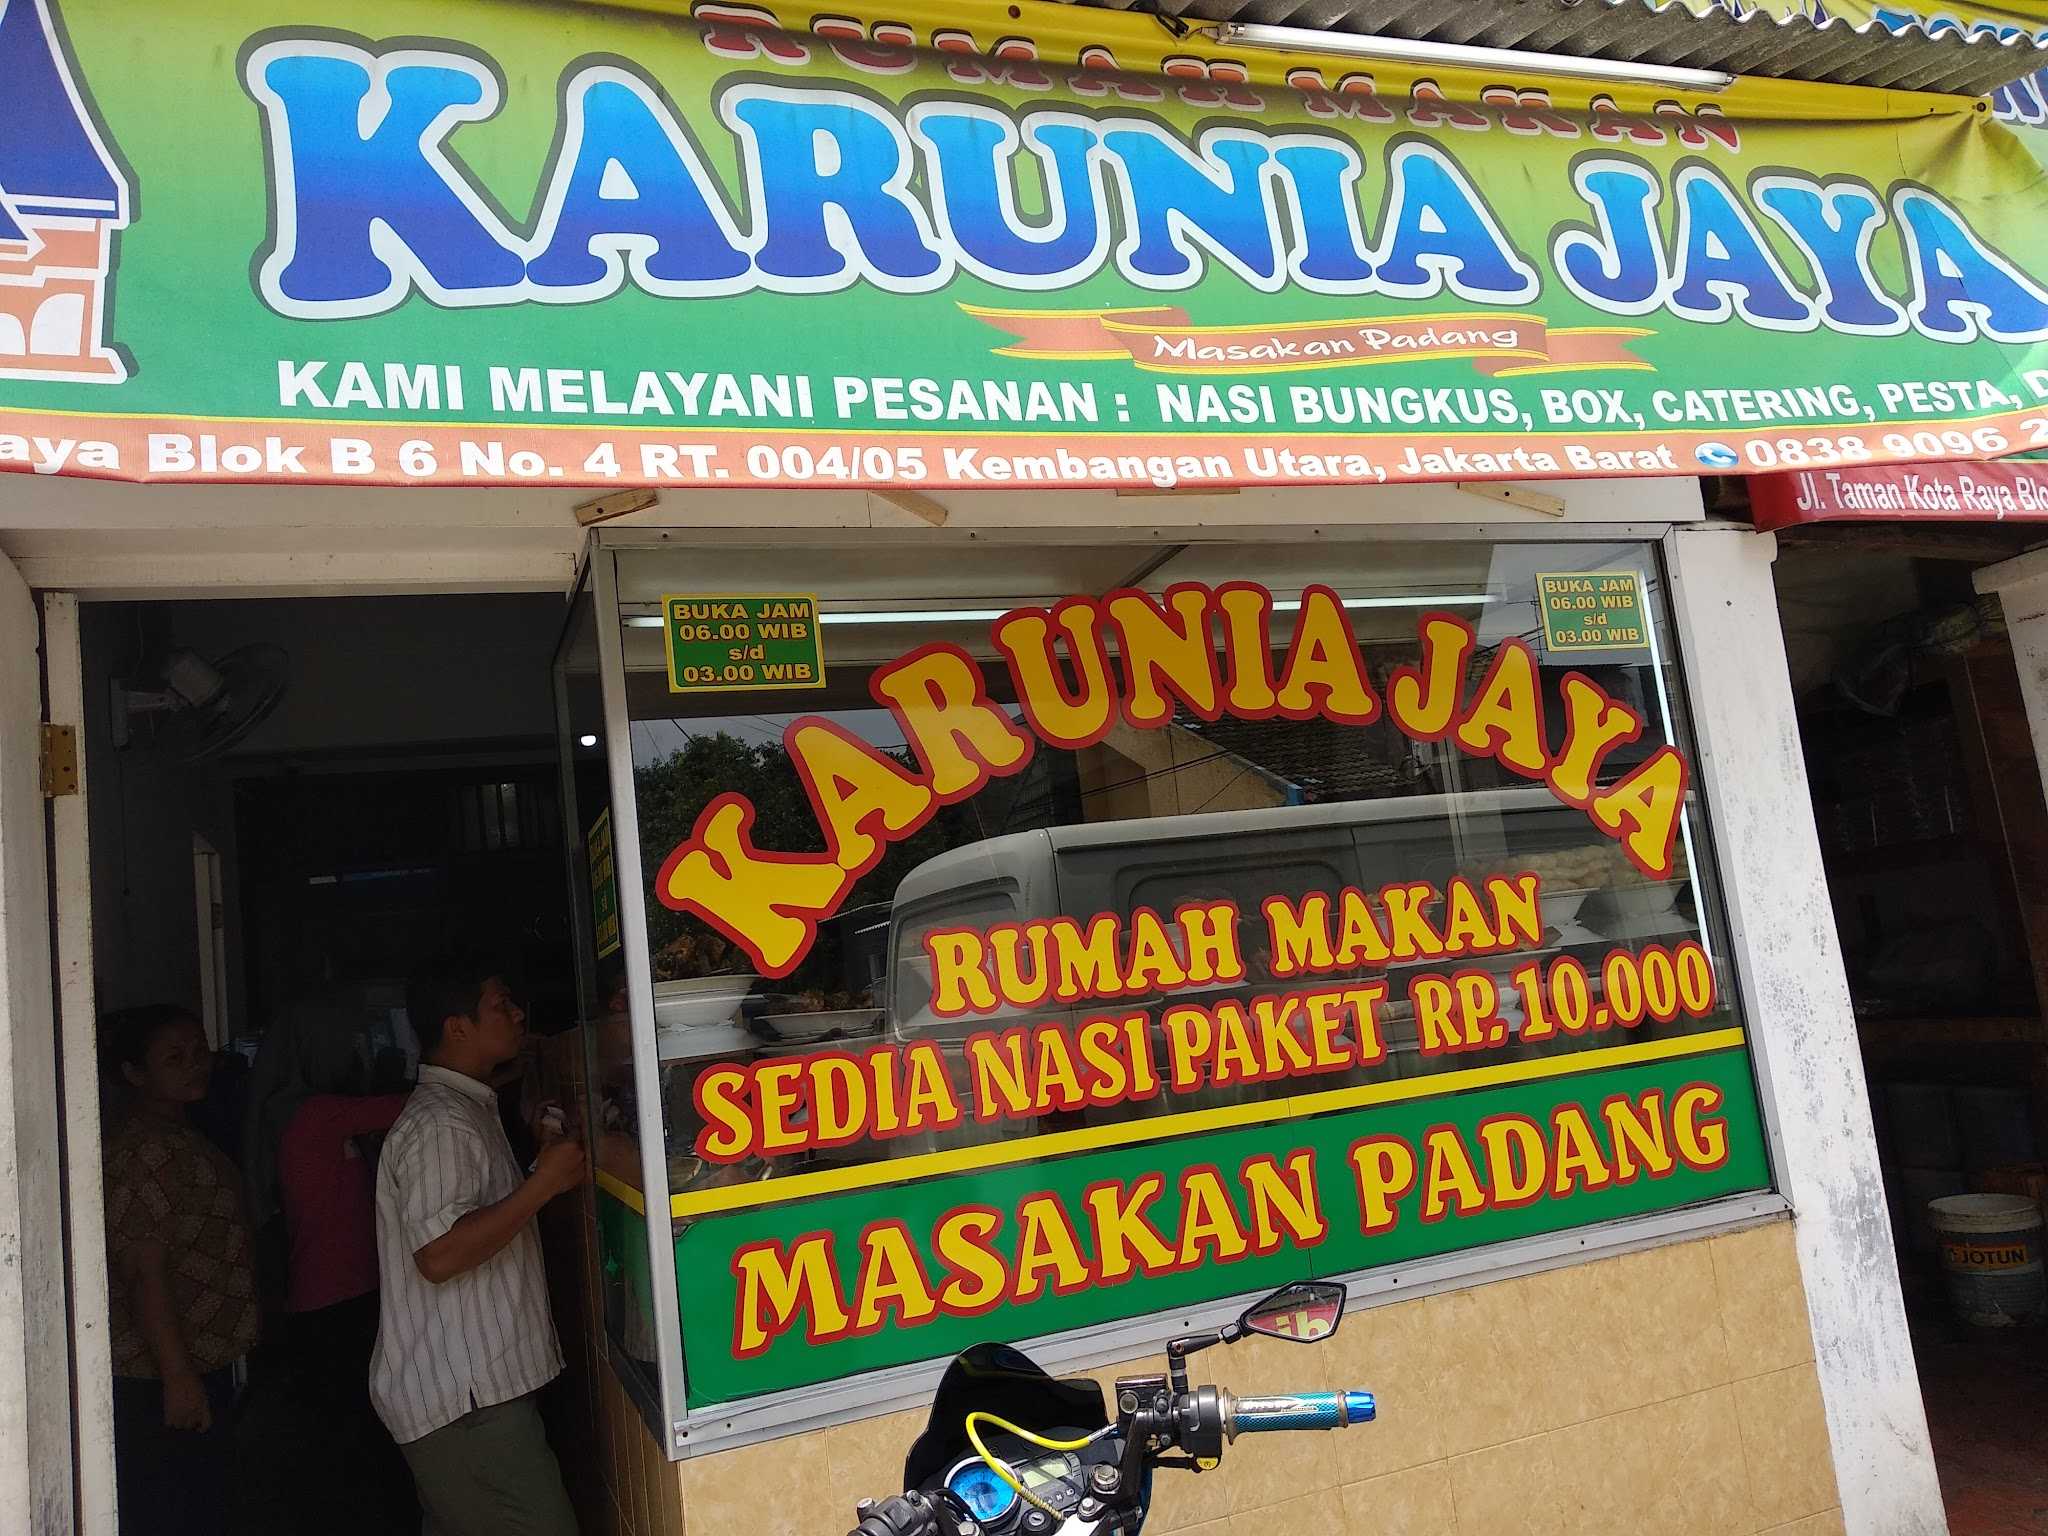 Rumah Makan Masakan Padang Karunia Jaya Taman Kota 1